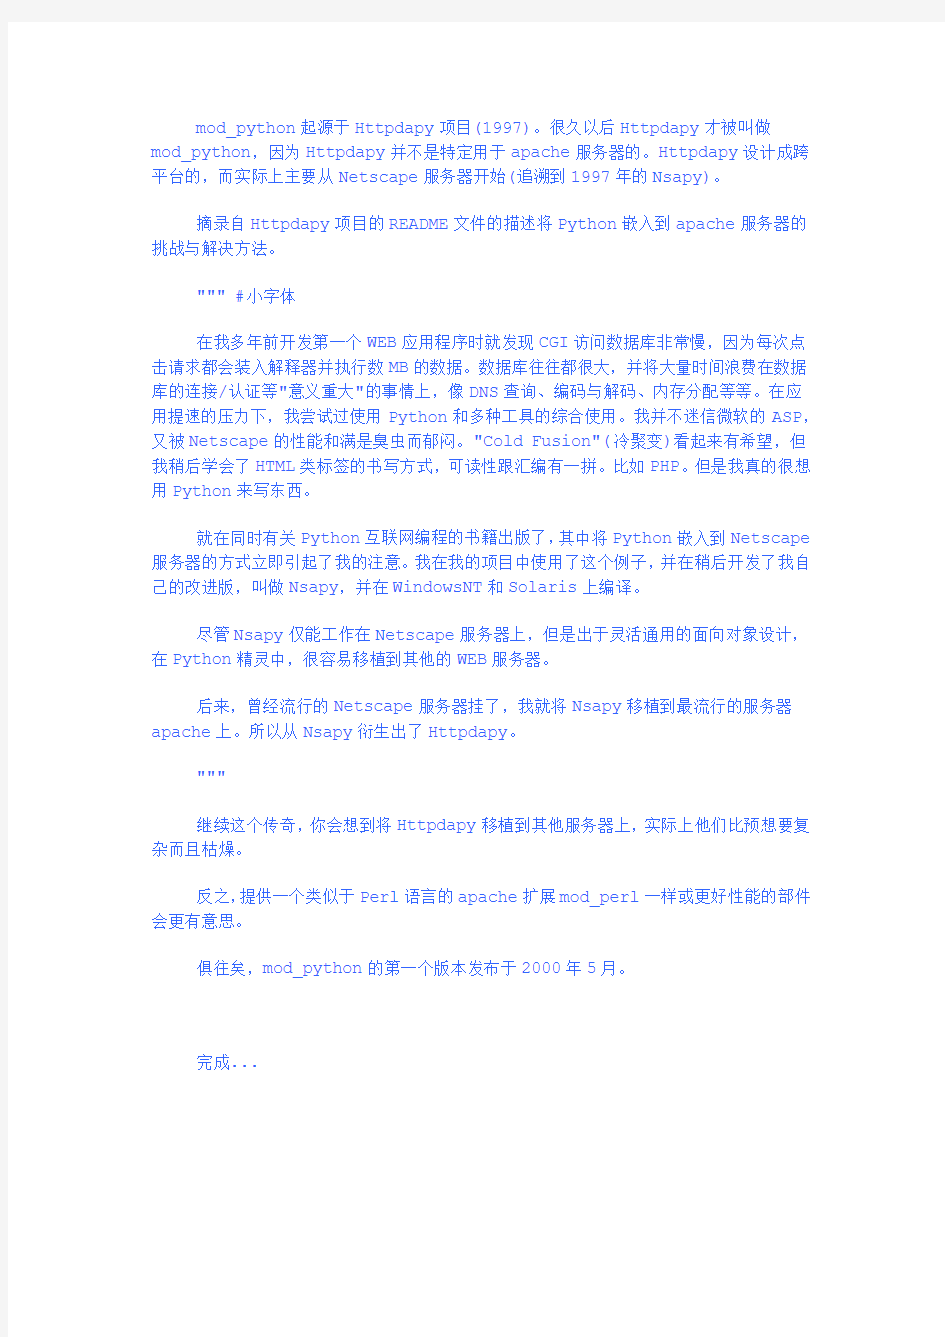 Mod_python_3.2.8中文手册